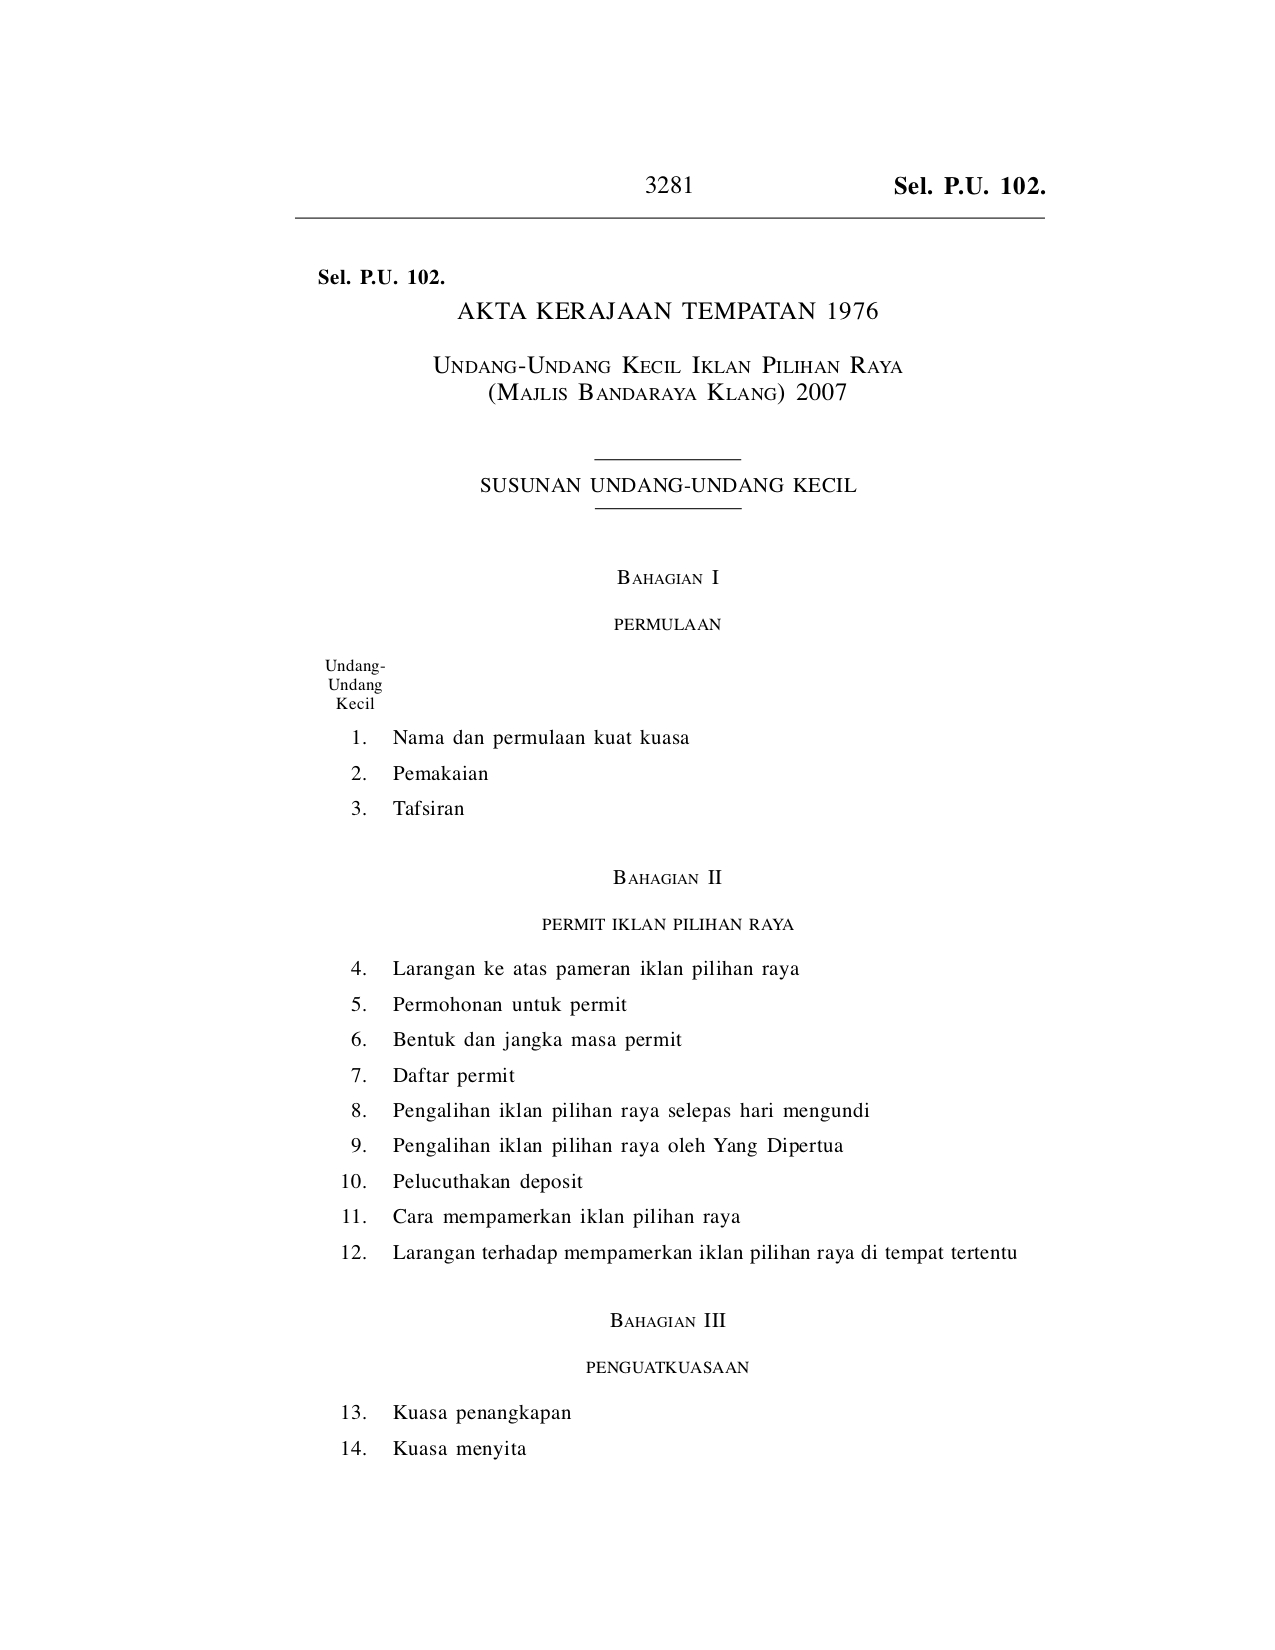 Undang-Undang Kecil Iklan Pilihan Raya (Majlis Bandaraya Klang) 2007 - Akta Kerajaan Tempatan 1976